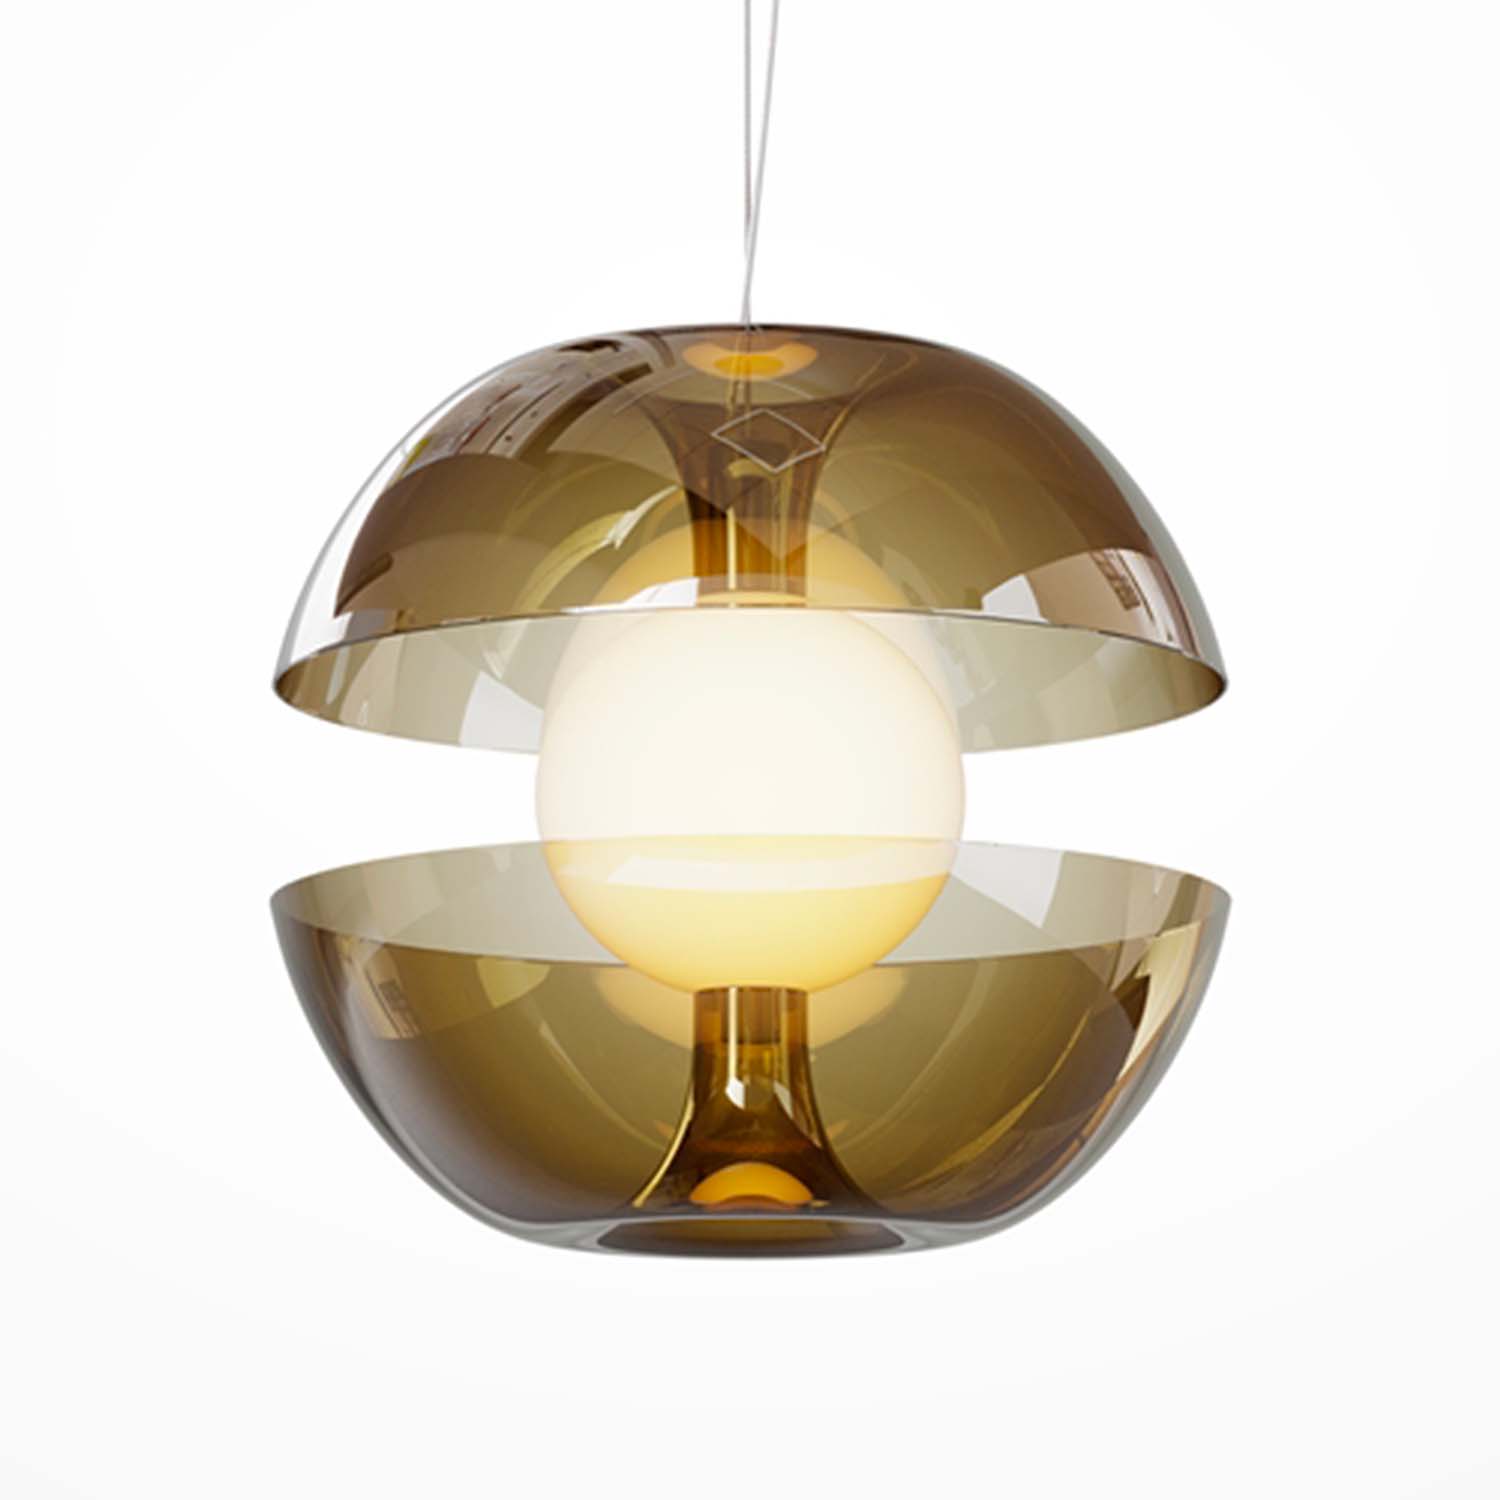 REBEL - Designer-Pendelleuchte in Form eines Apfels, Rauchglas. Integrierte LED